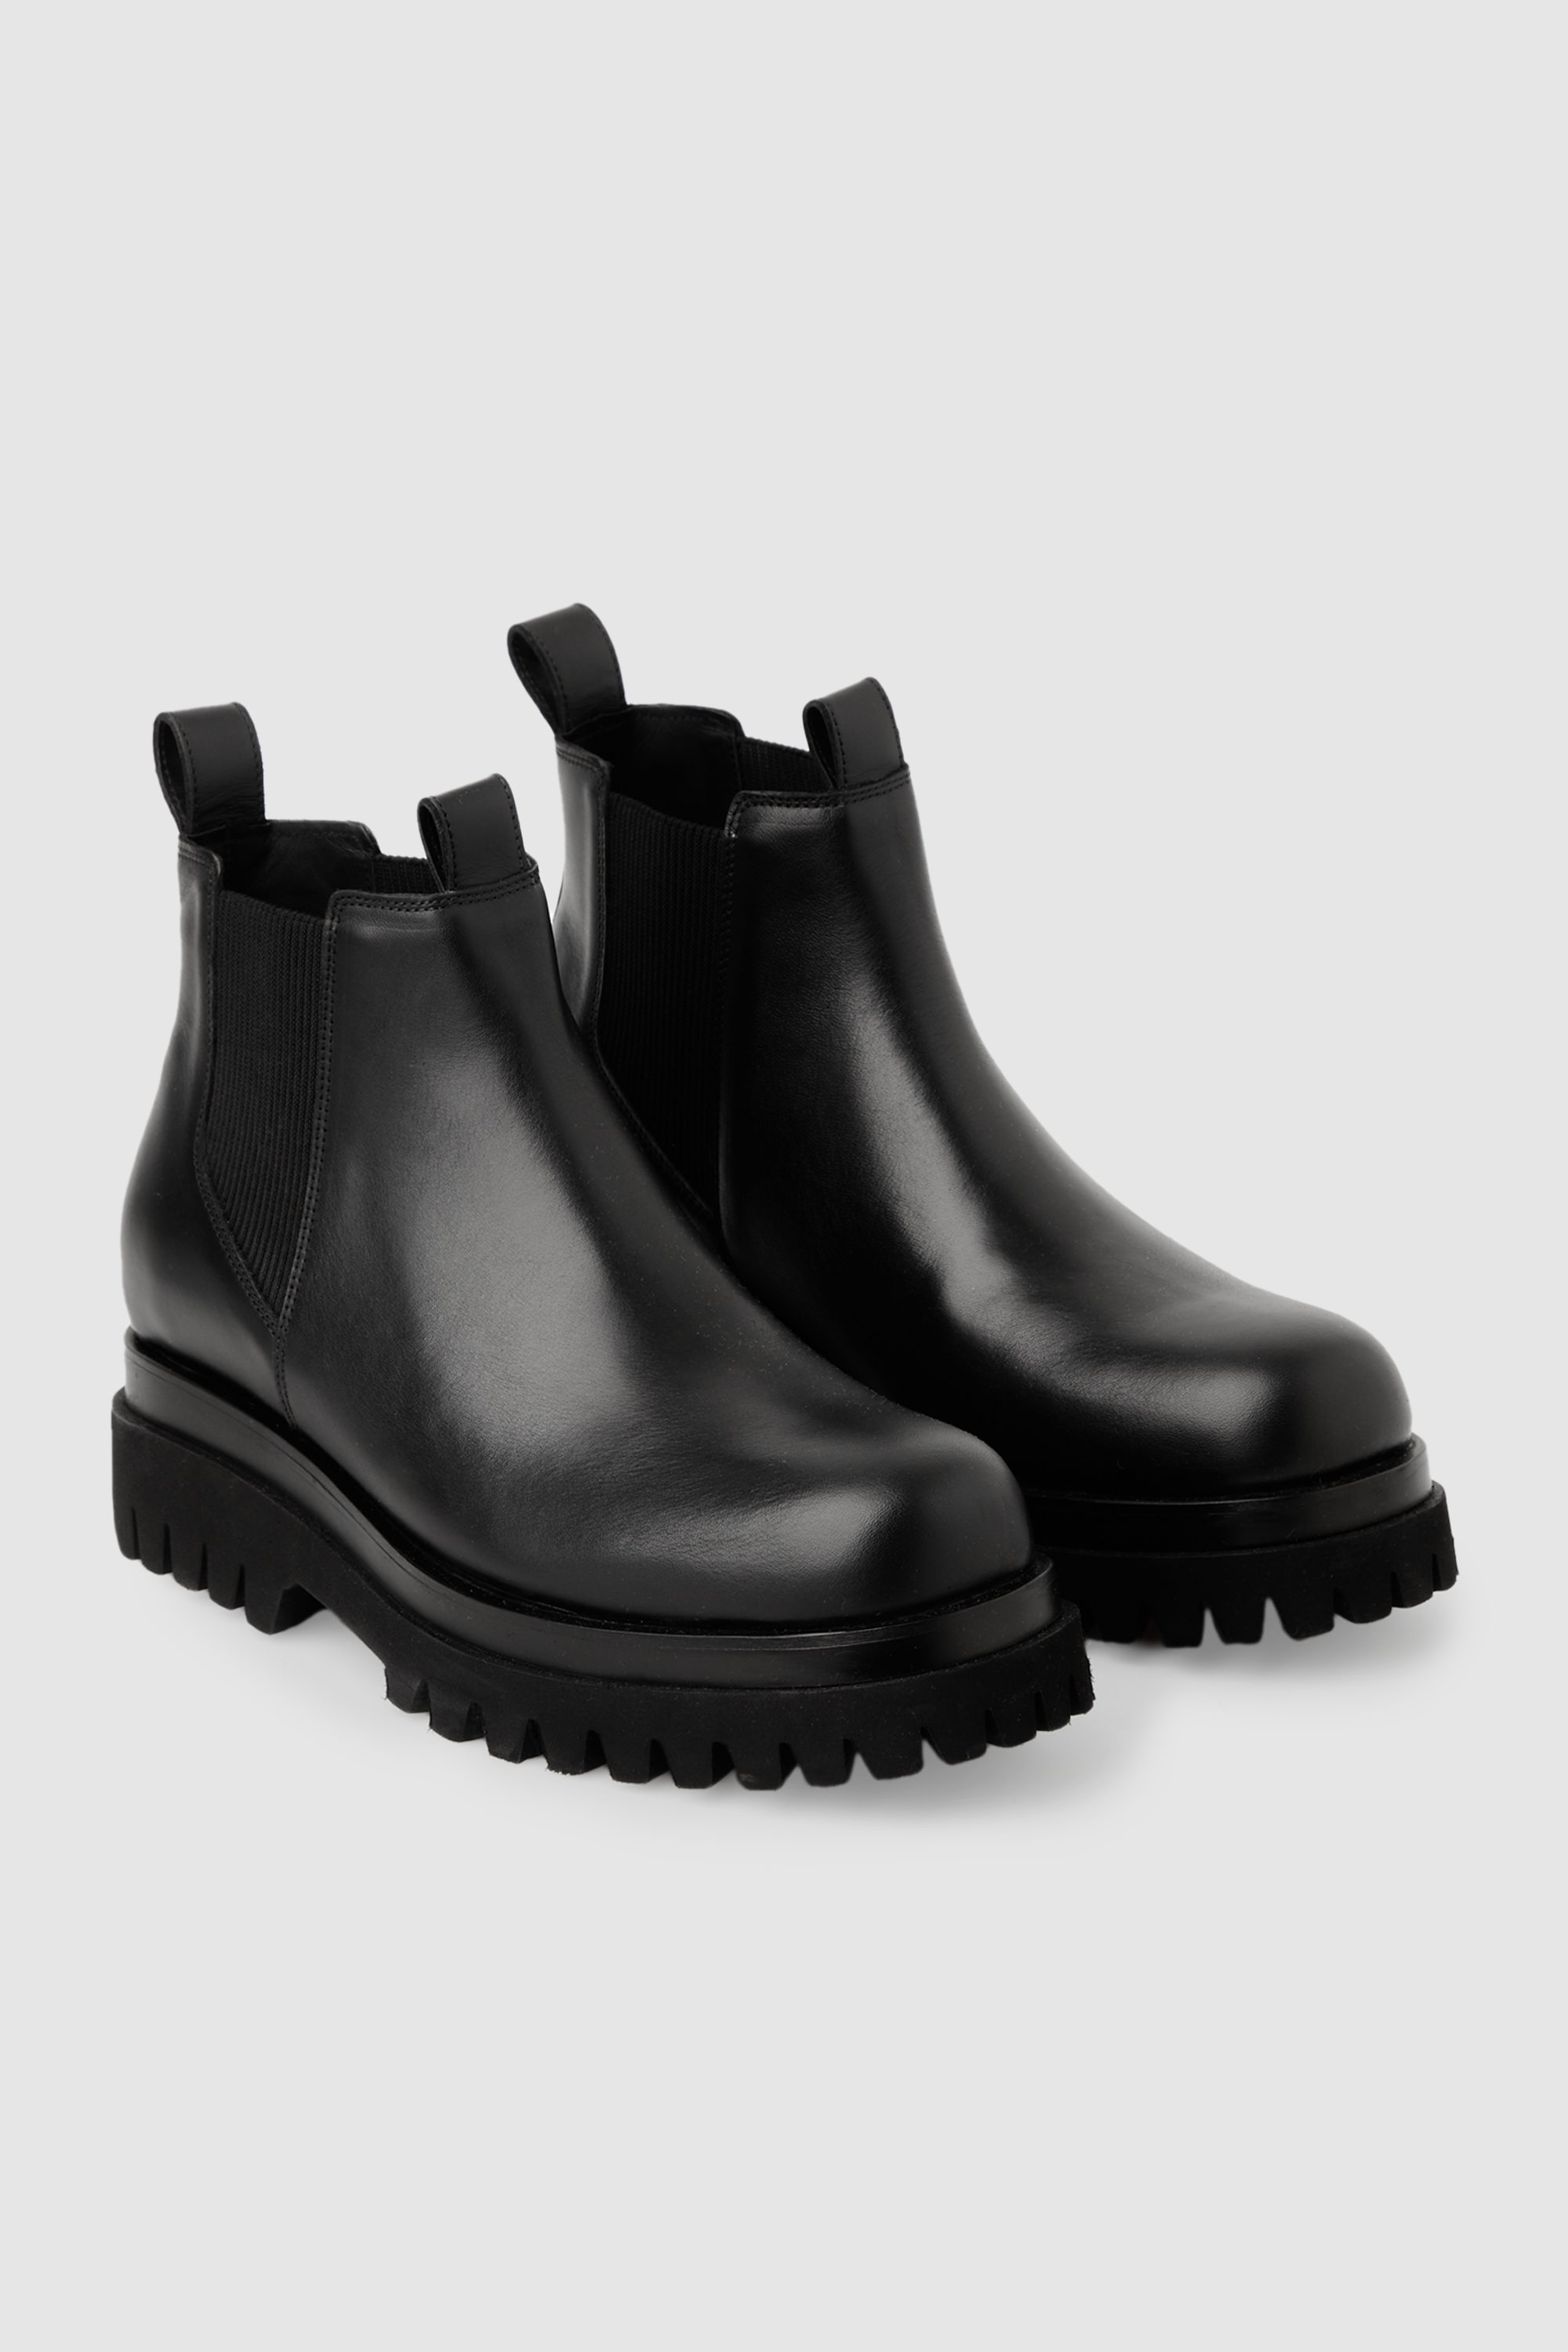 Påstået Skynd dig tåge Leather Chelsea Boots Black Black | Afound.com